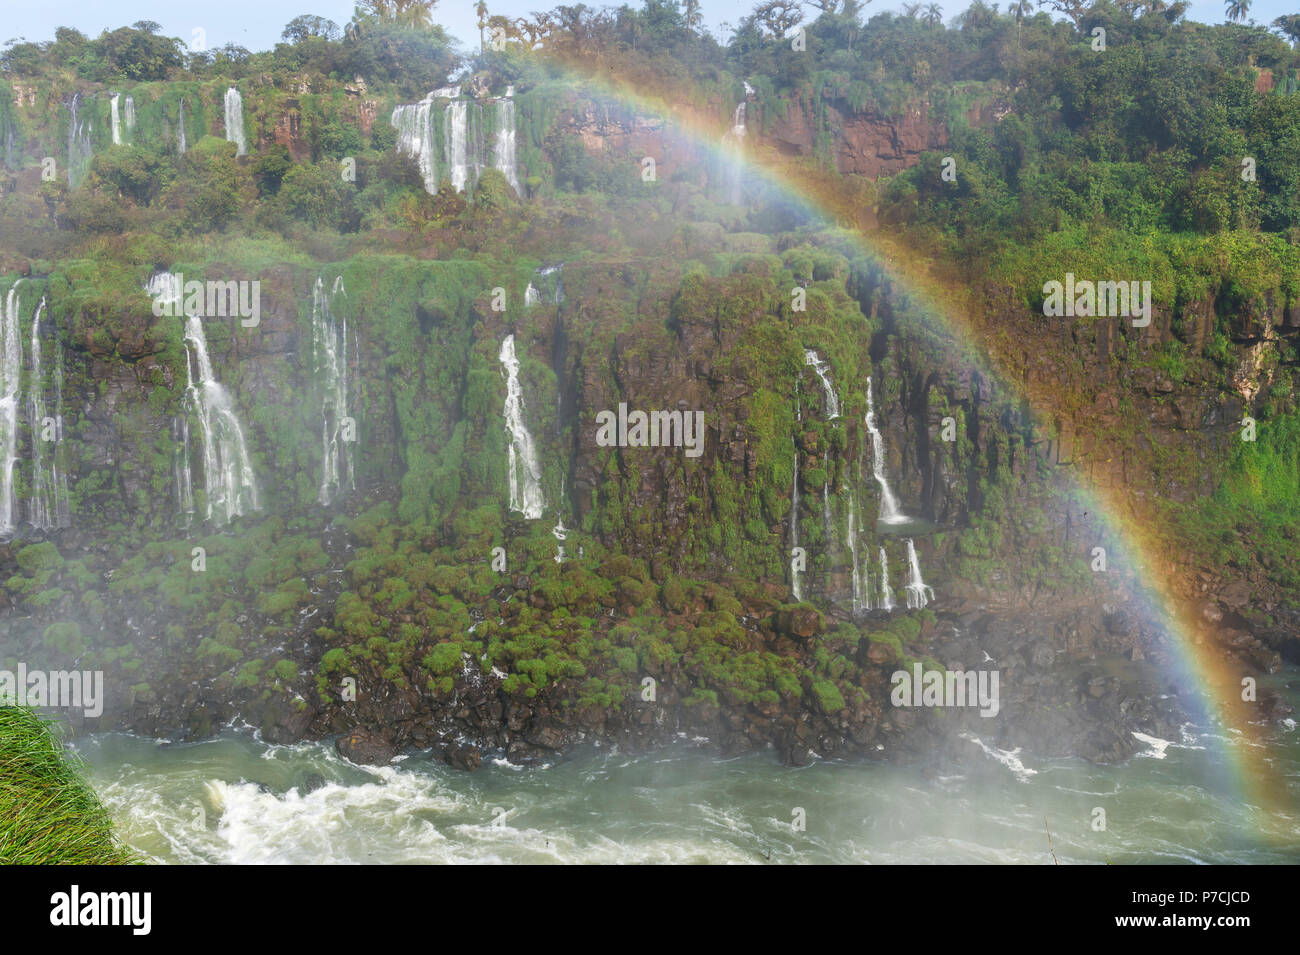 Voir des chutes d'Iguazu du côté brésilien, UNESCO World Heritage Site, Foz do Iguaçu, l'Etat du Parana, Brésil Banque D'Images